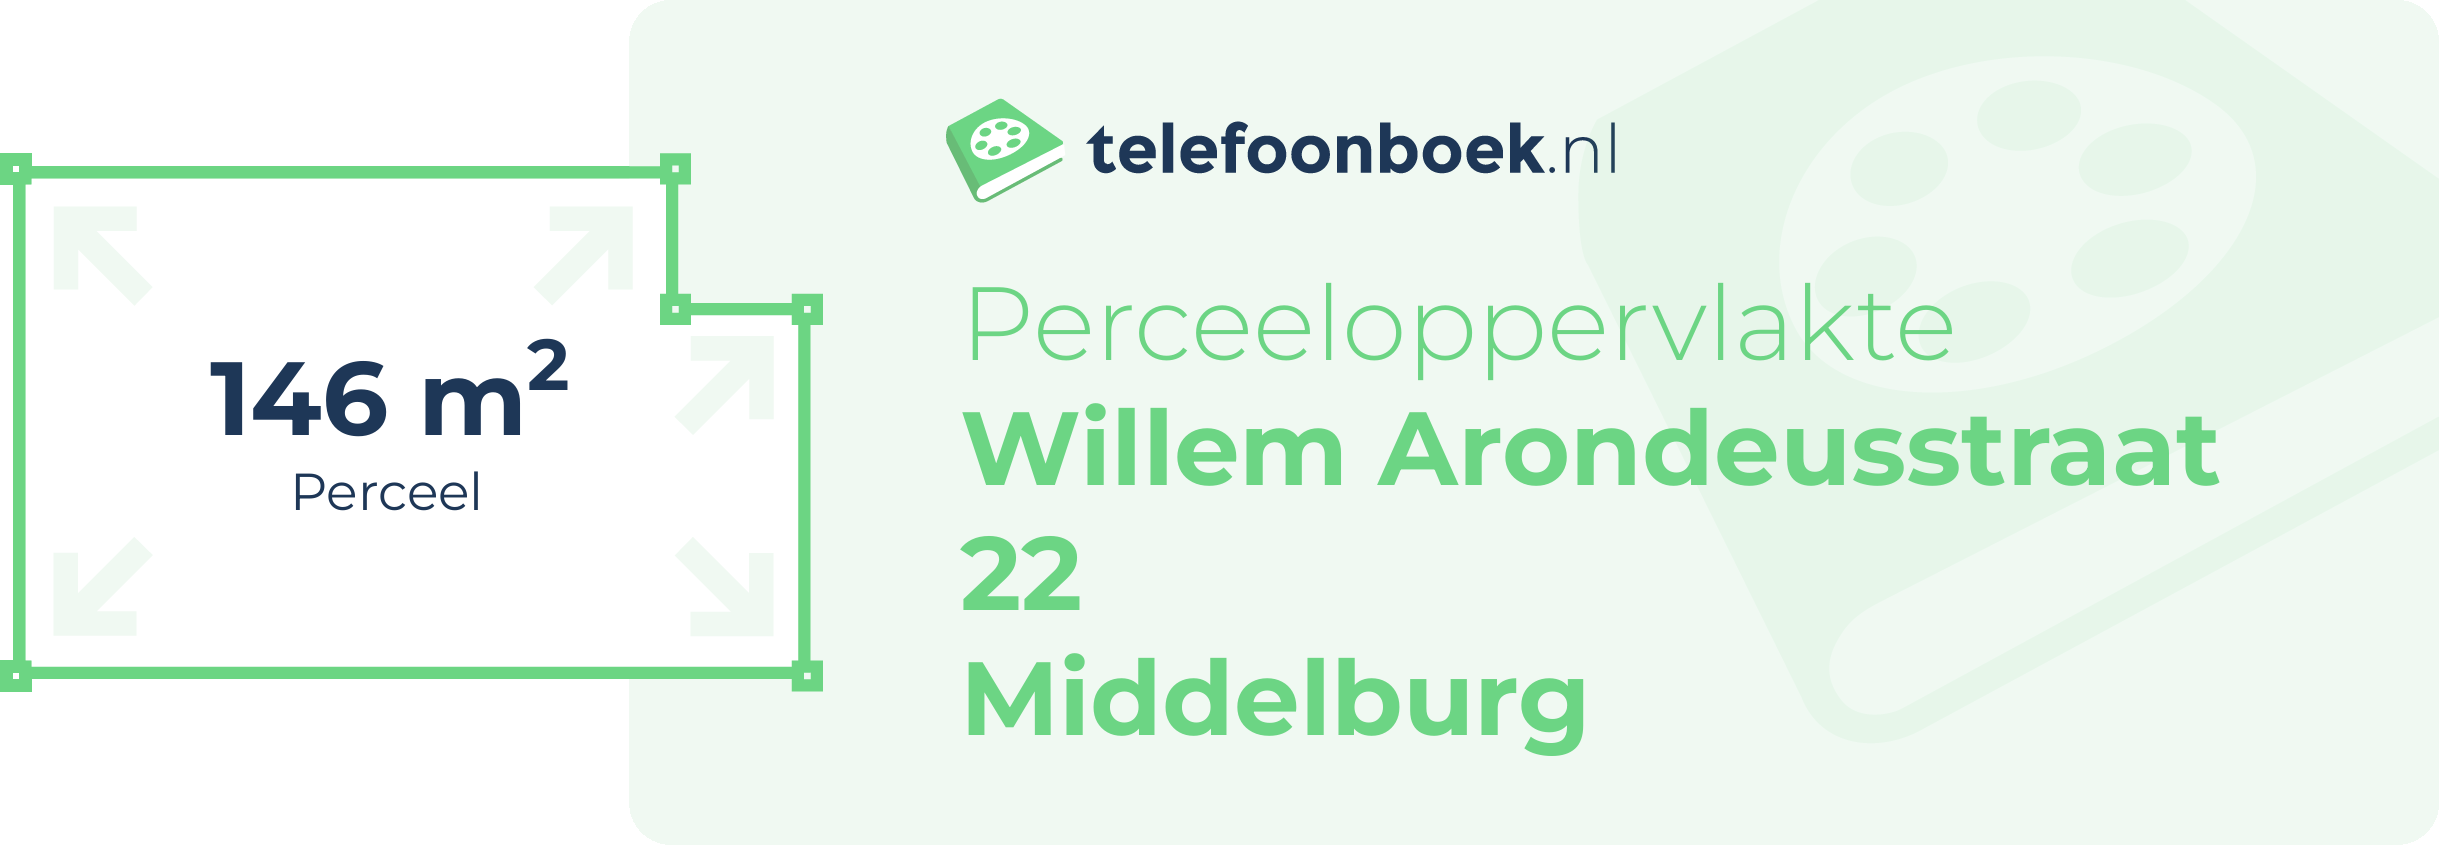 Perceeloppervlakte Willem Arondeusstraat 22 Middelburg